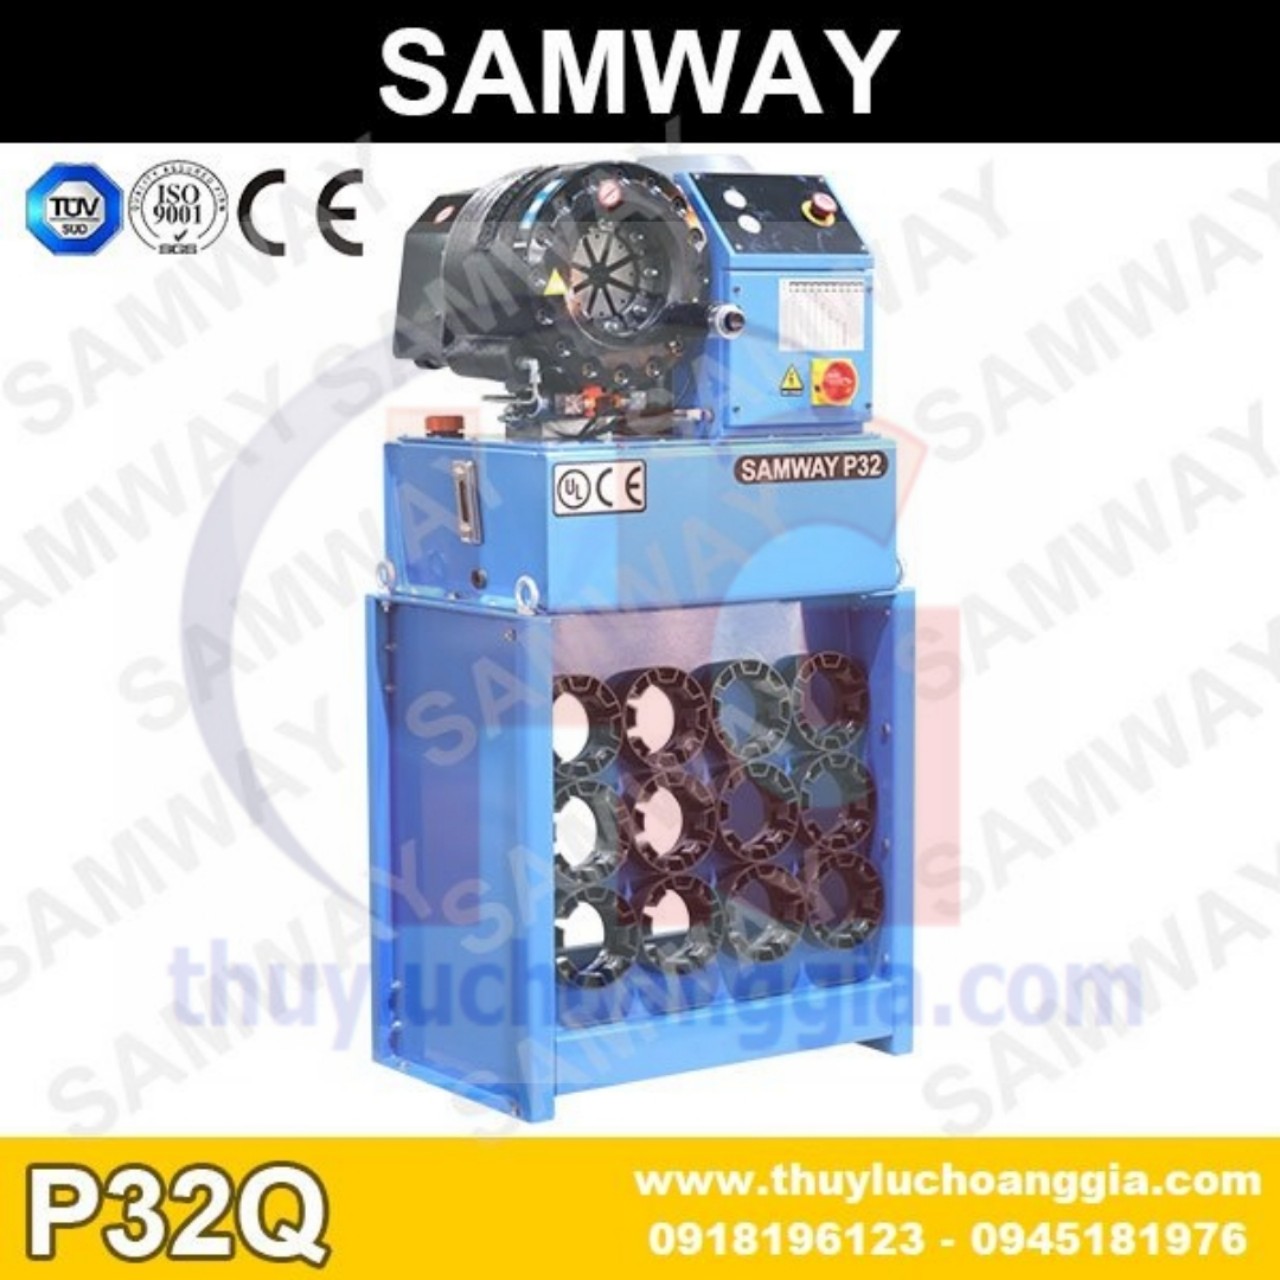 MÁY BẤM ỐNG THỦY LỰC SAMWAY P32Q